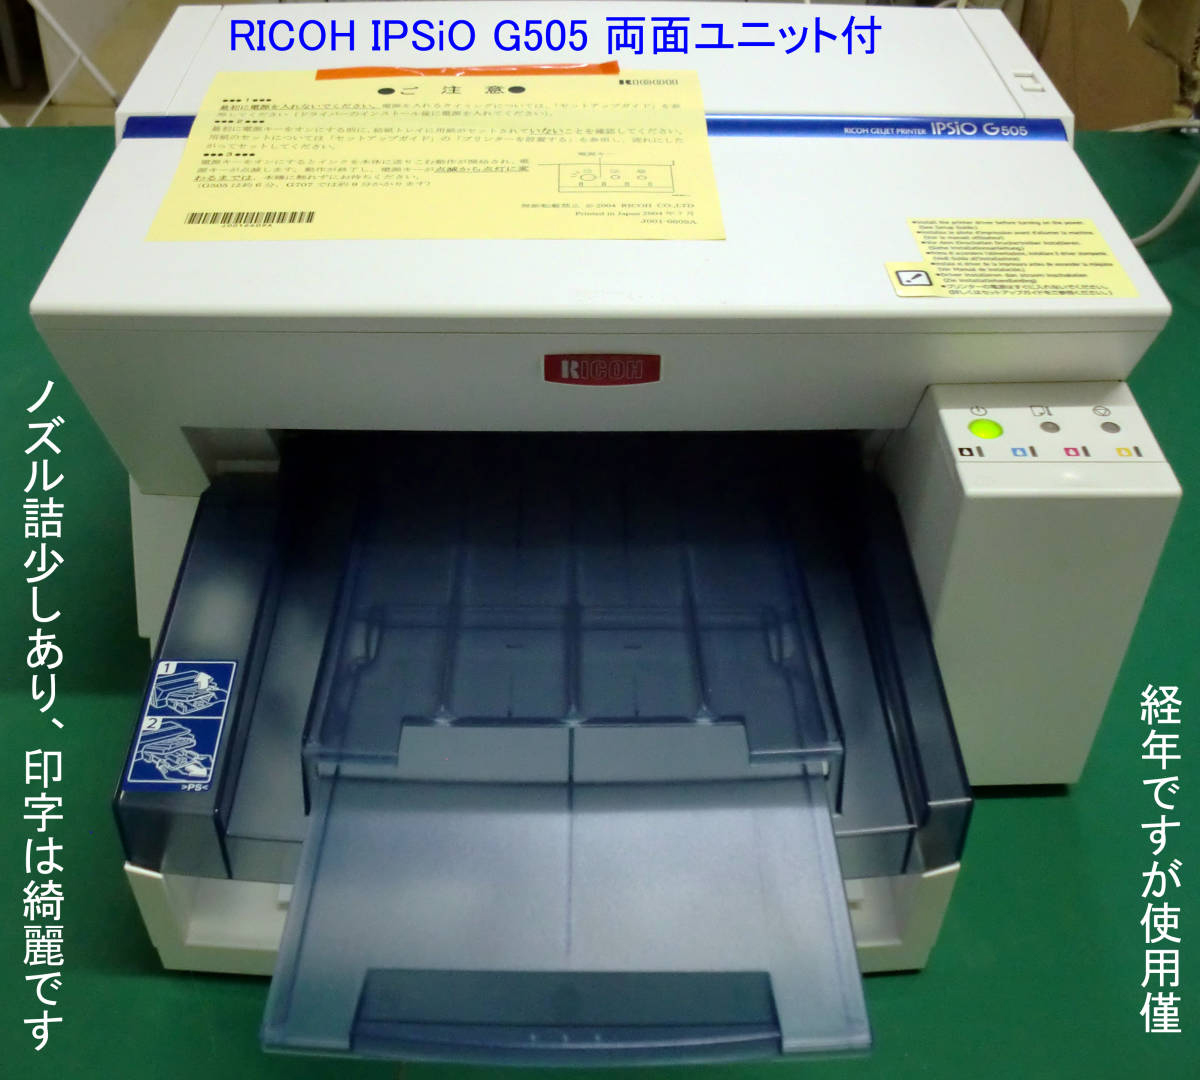 キヤノン モノクロ複合機「Satera MF-266dnⅡ」Copy:FAX:Printer